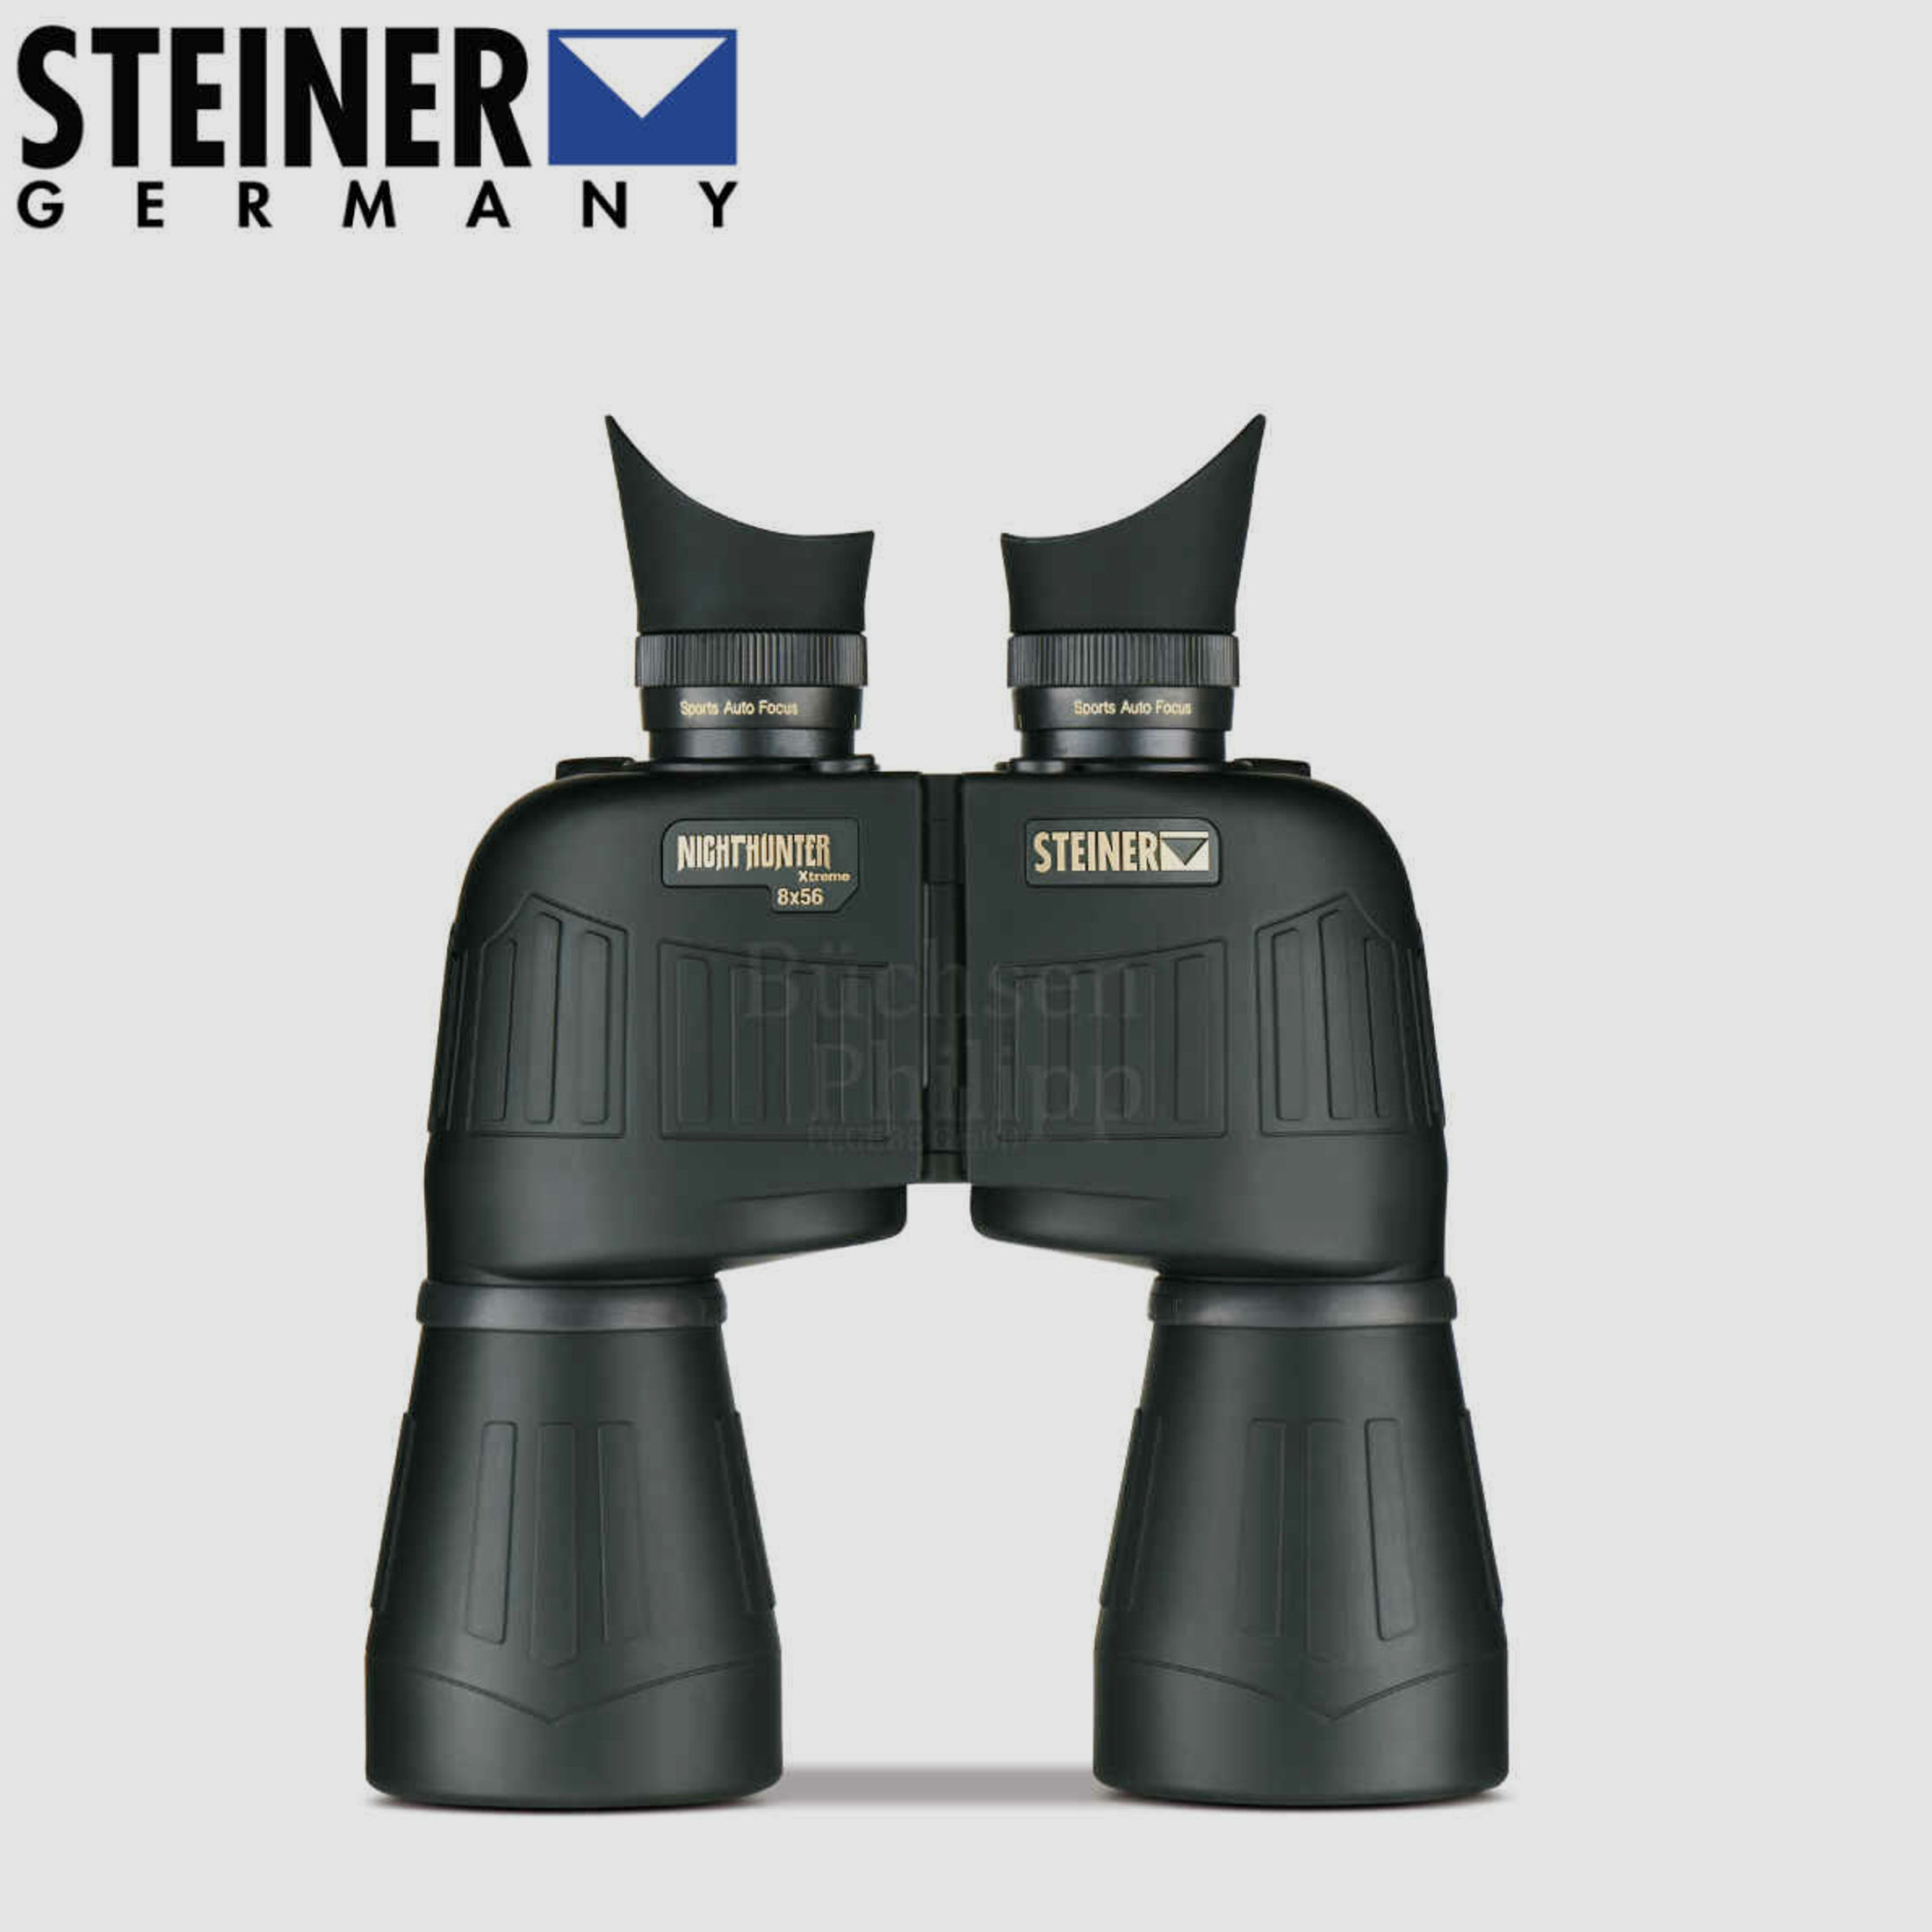 Steiner	 Nighthunter 8x56mm